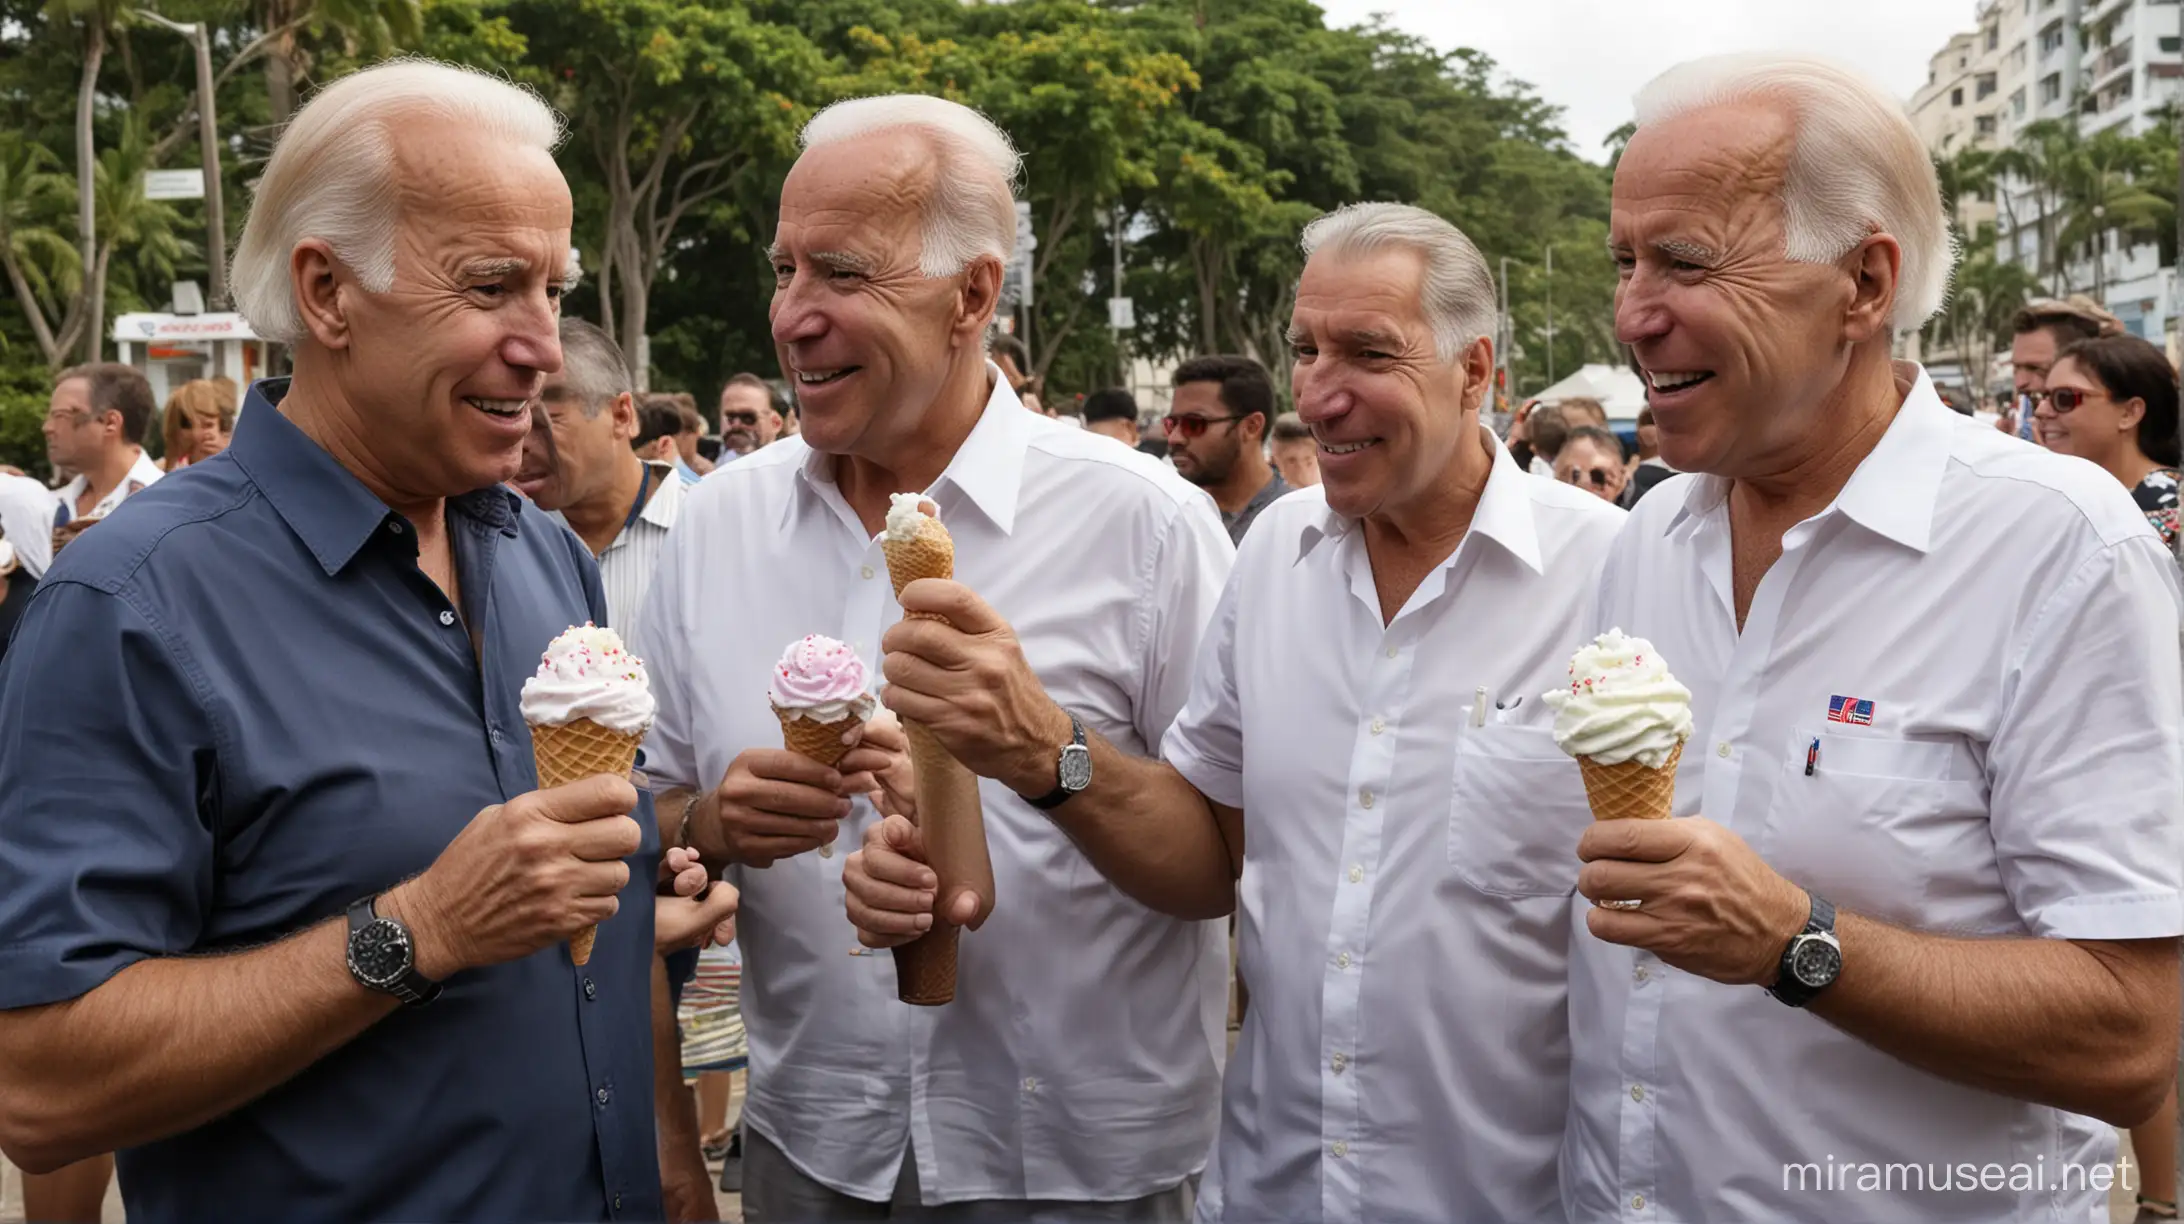 Joe Biden Eating an ice cream cone with Jeffrey Epstein in Rio de Janeiro